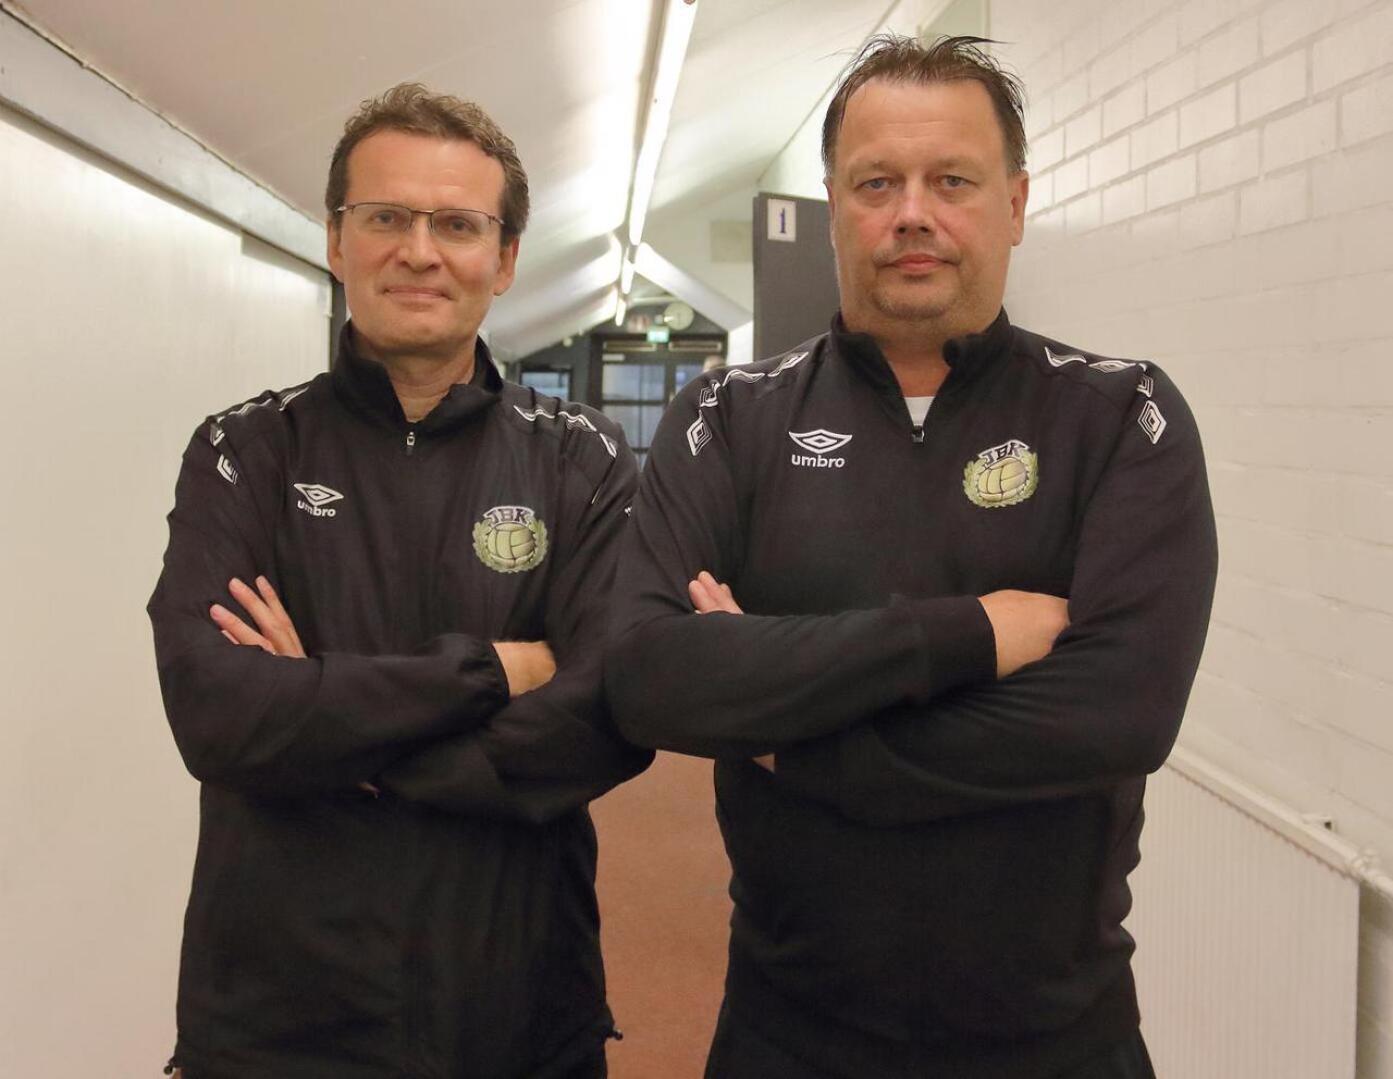 JBK joukkueenjohtaja Jari Jakobsson sekä juniorivalmentaja Lars Sandvik tekevät näkymätöntä, mutta arvokasta työtä.